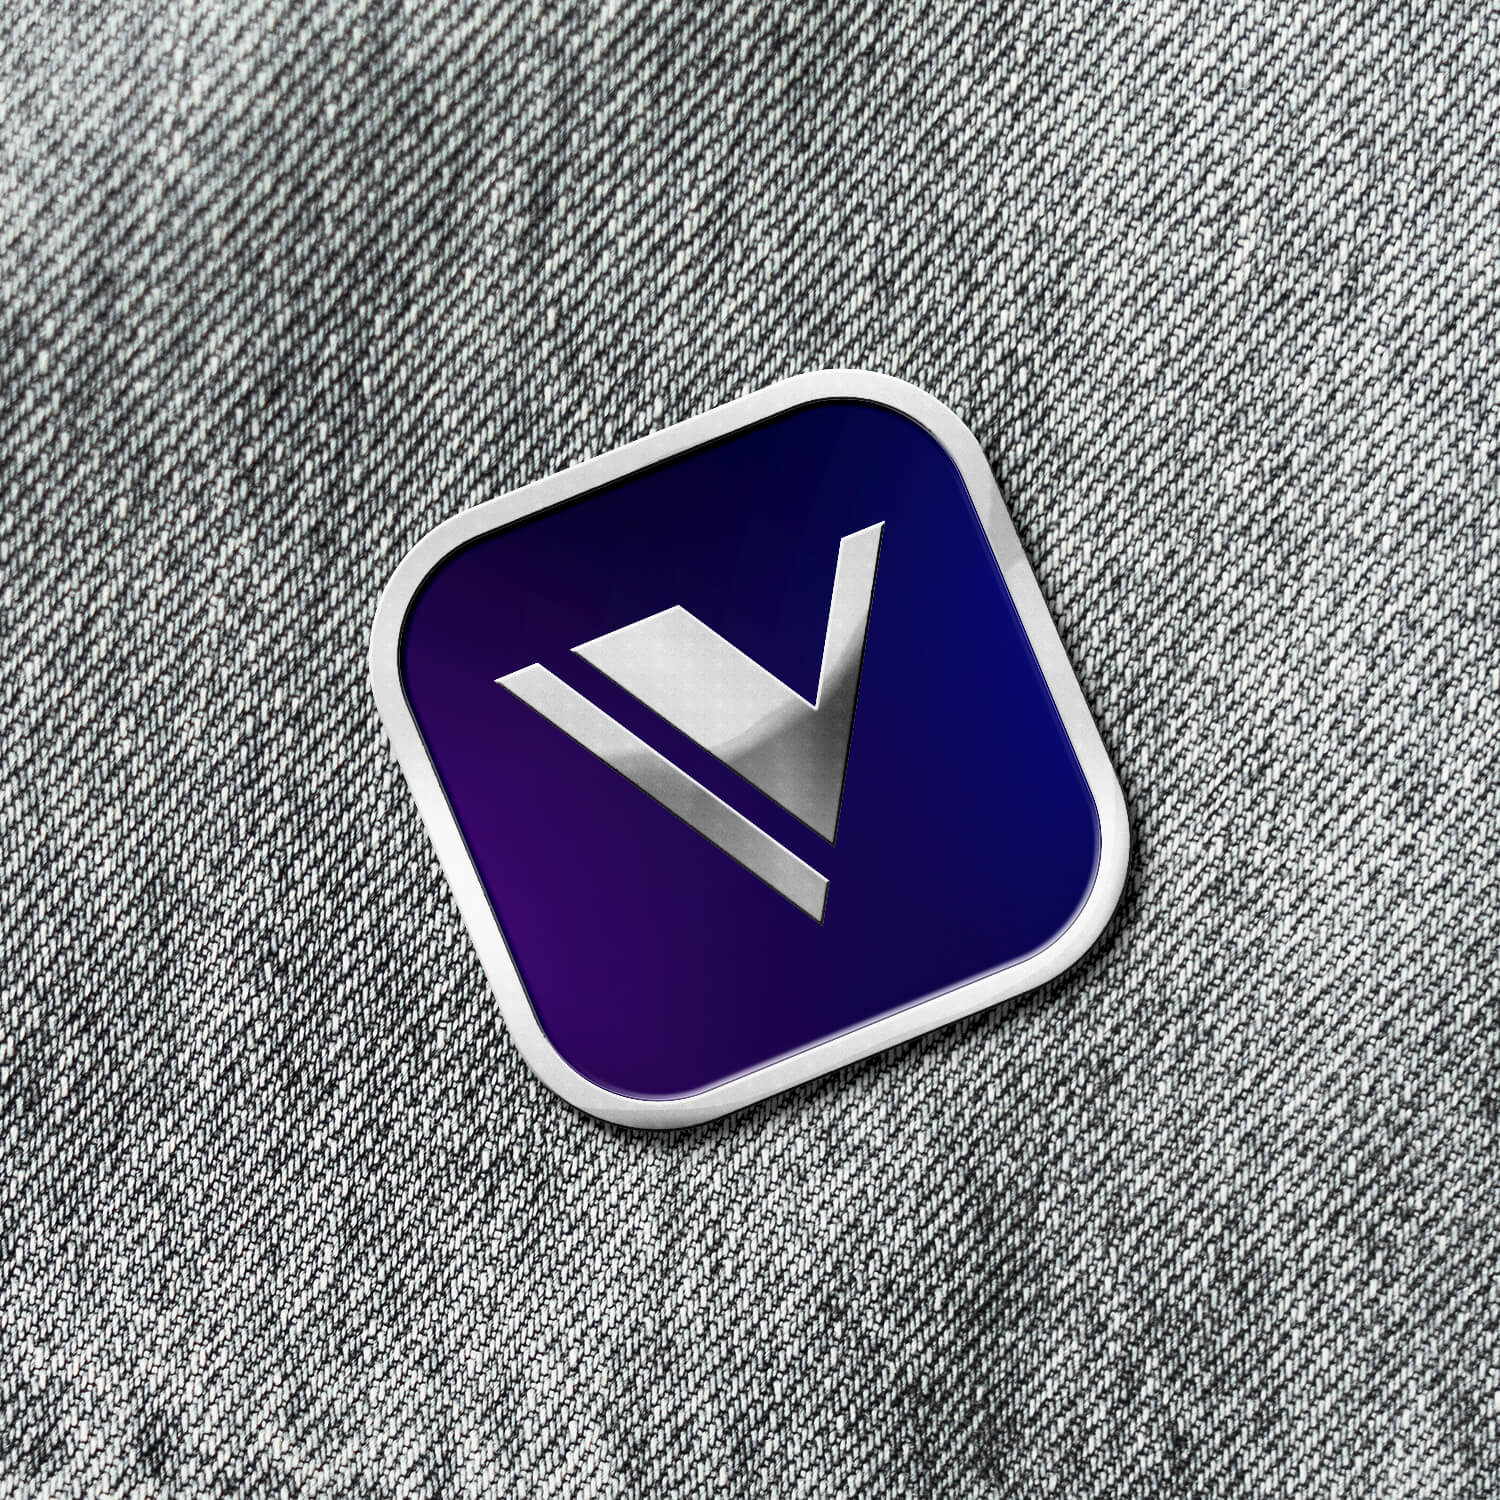 Denim jacket displaying an enamel pin of the Vala app icon